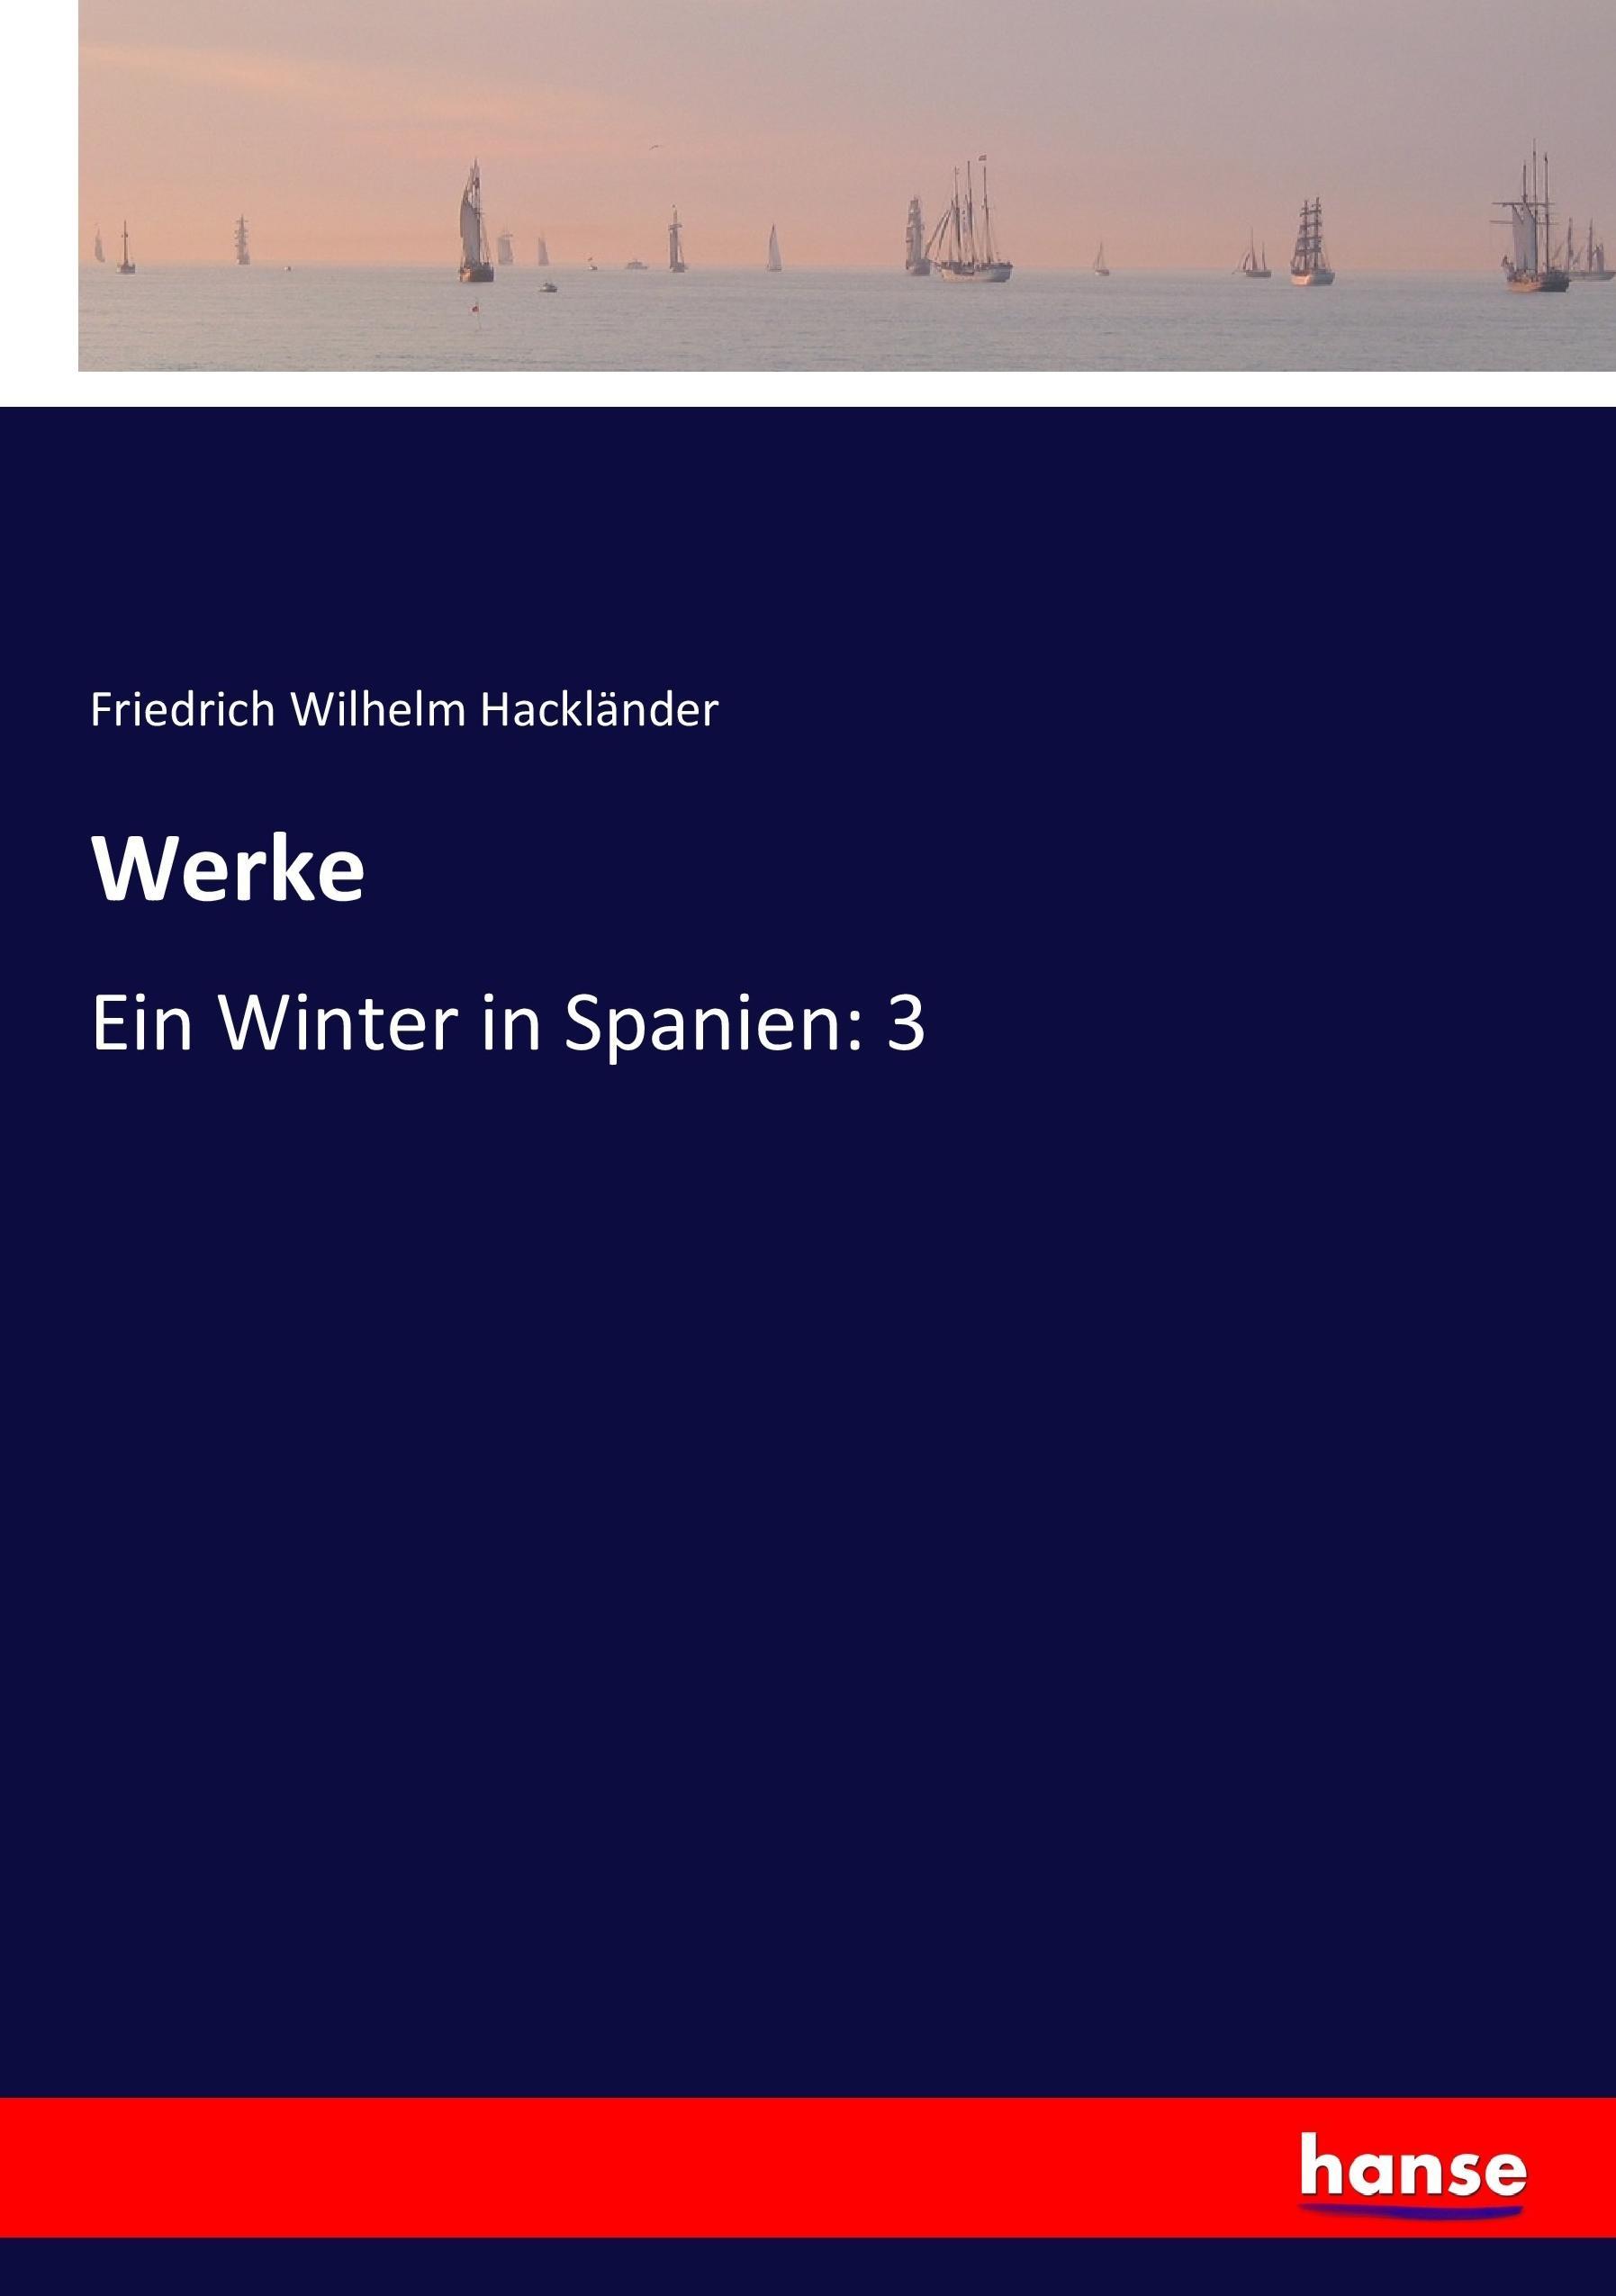 Werke | Ein Winter in Spanien: 3 | Friedrich Wilhelm Hackländer | Taschenbuch | Paperback | 276 S. | Deutsch | 2017 | hansebooks | EAN 9783744634458 - Hackländer, Friedrich Wilhelm